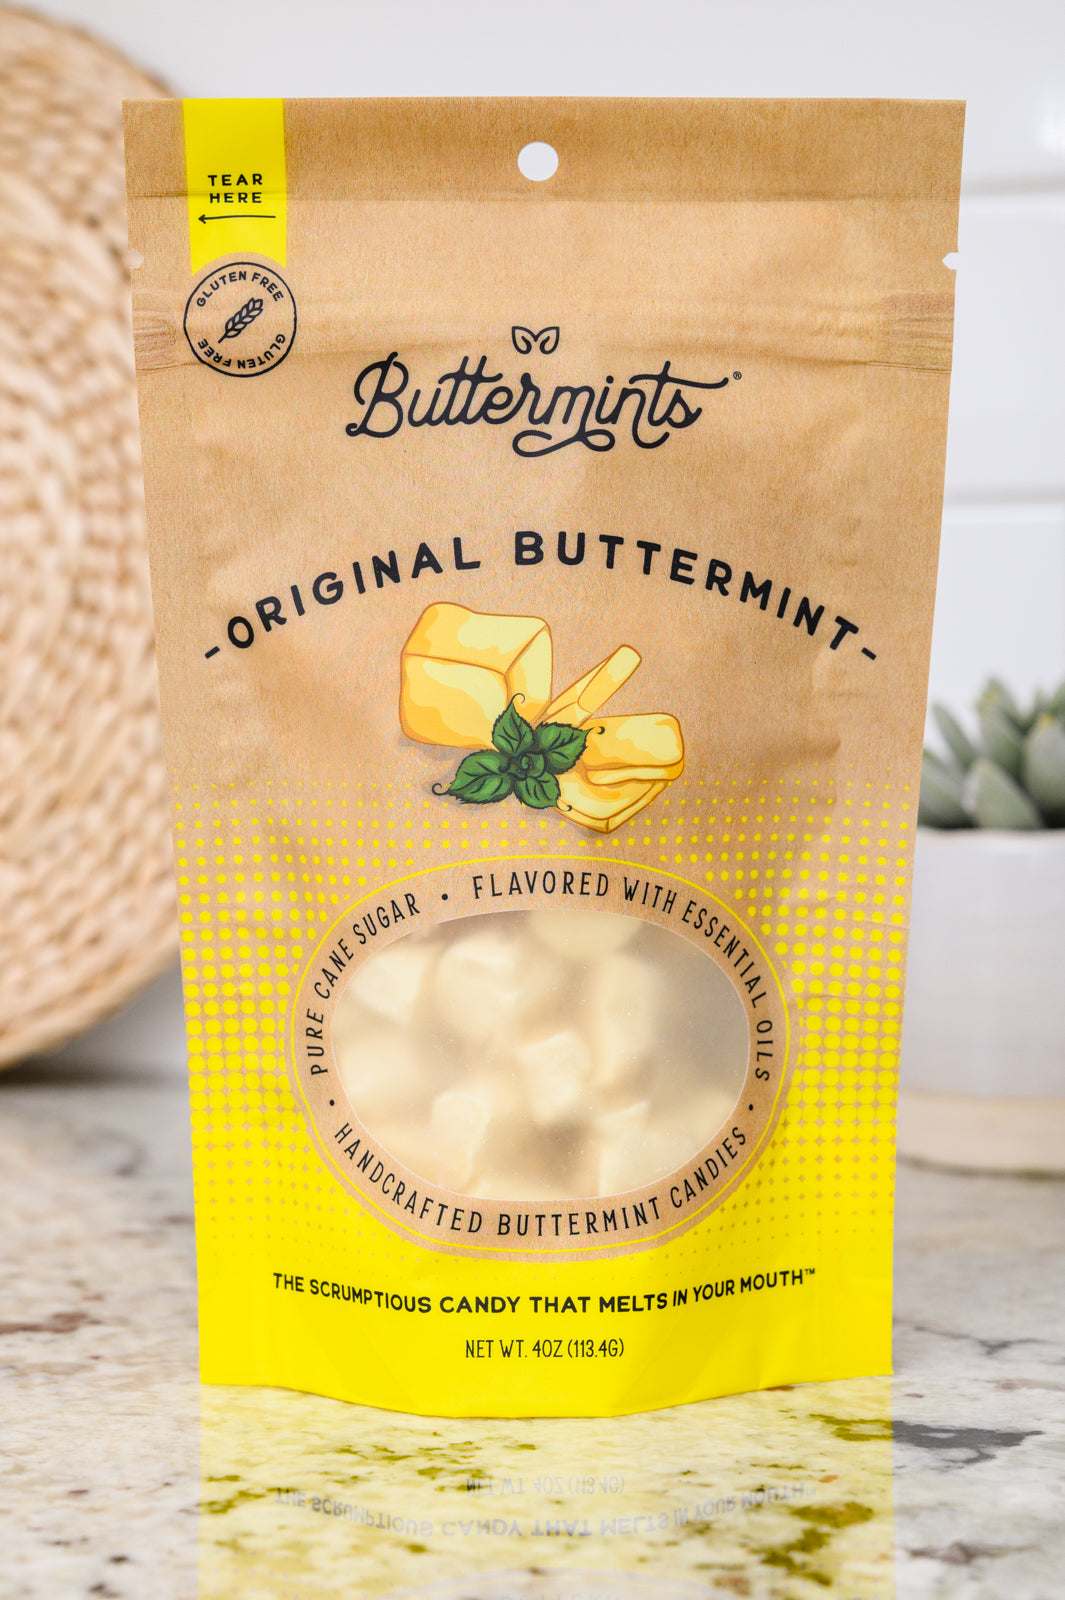 Original Buttermilk Buttermints (Online Exclusive)